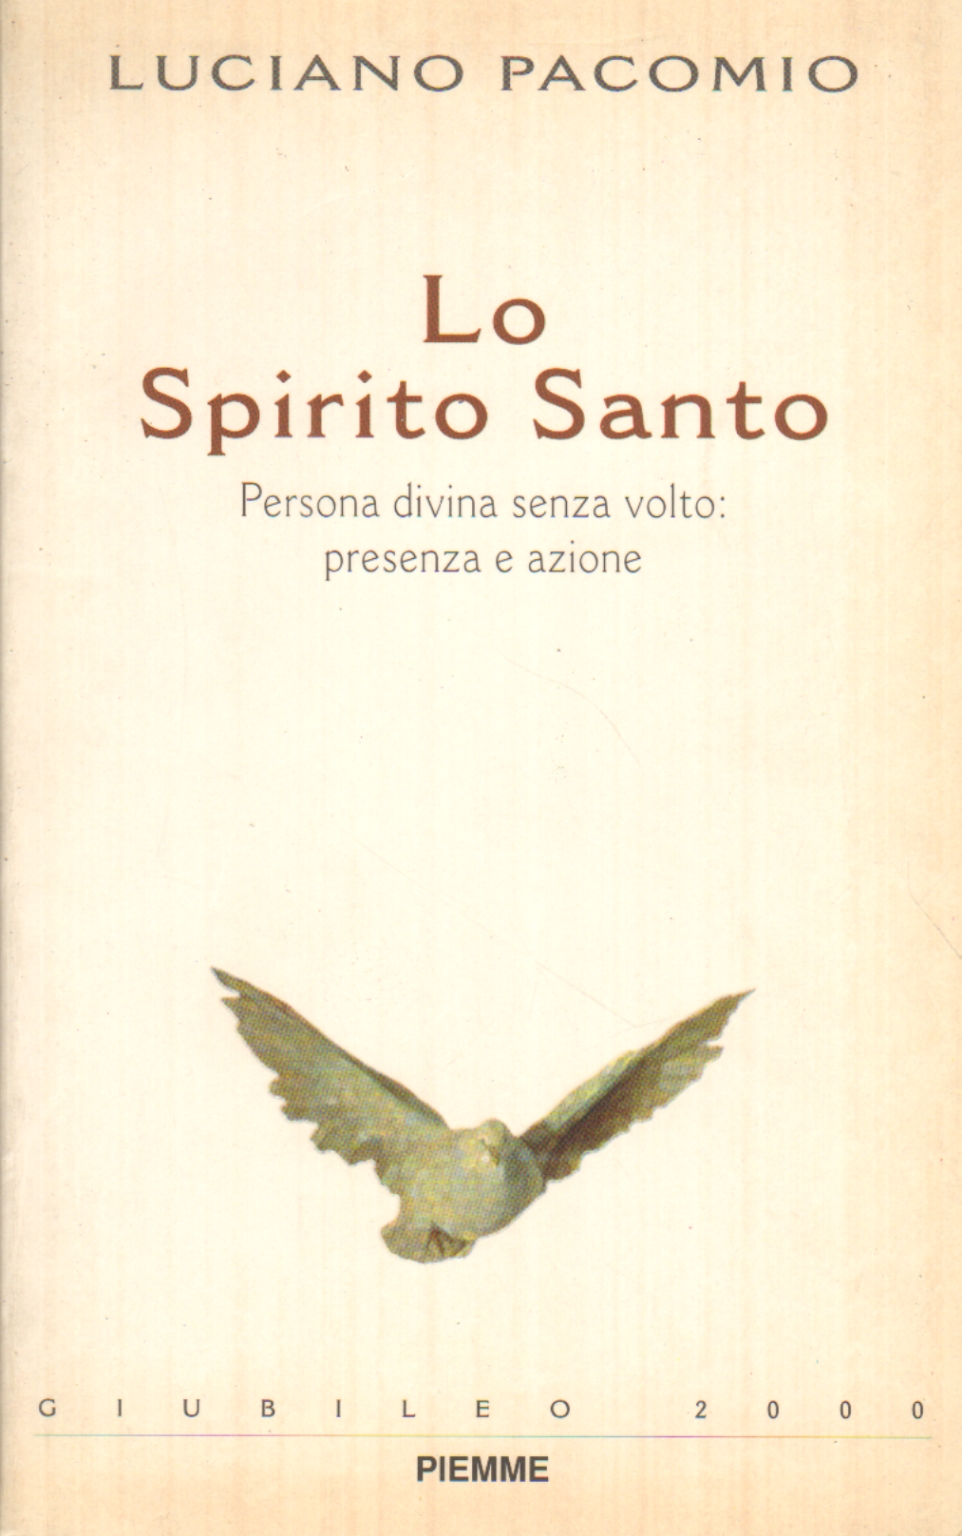 El Espíritu Santo, Luciano Pacomio